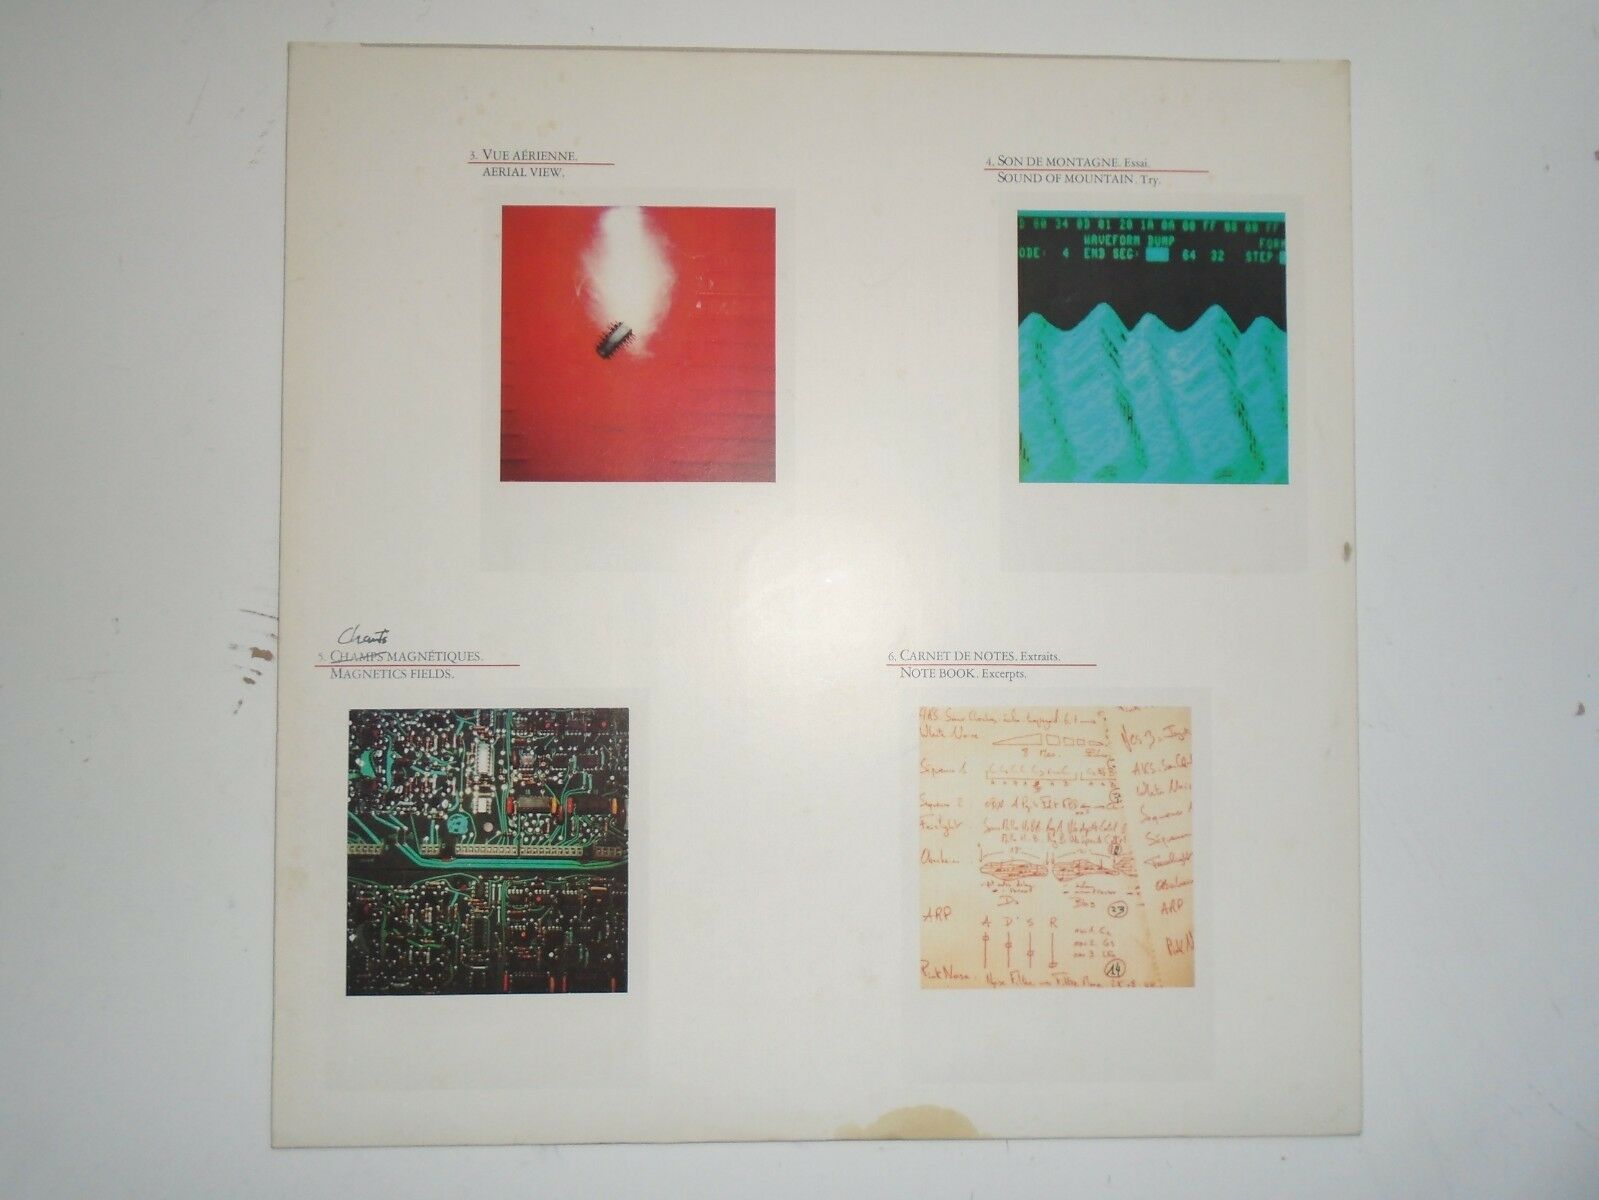 jean-michel-jarre-les-chants-magnetiques-superb-1st-press-n-mint-vinyl-lp-1981_45066190